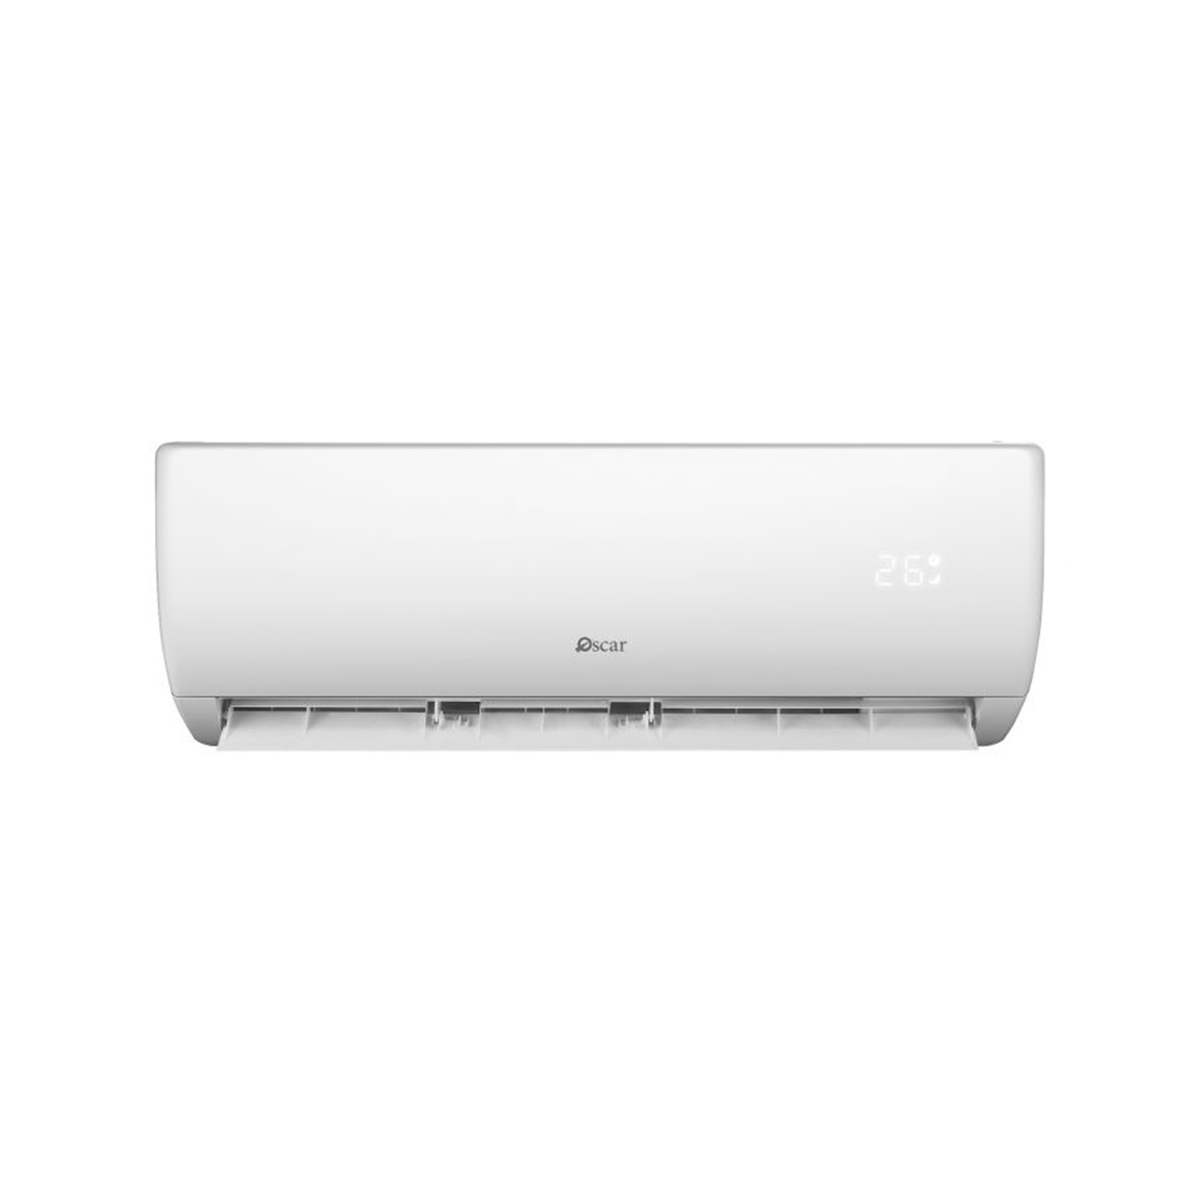 Oscr Split Air Conditioner OS18TC-R410 17000 BTU